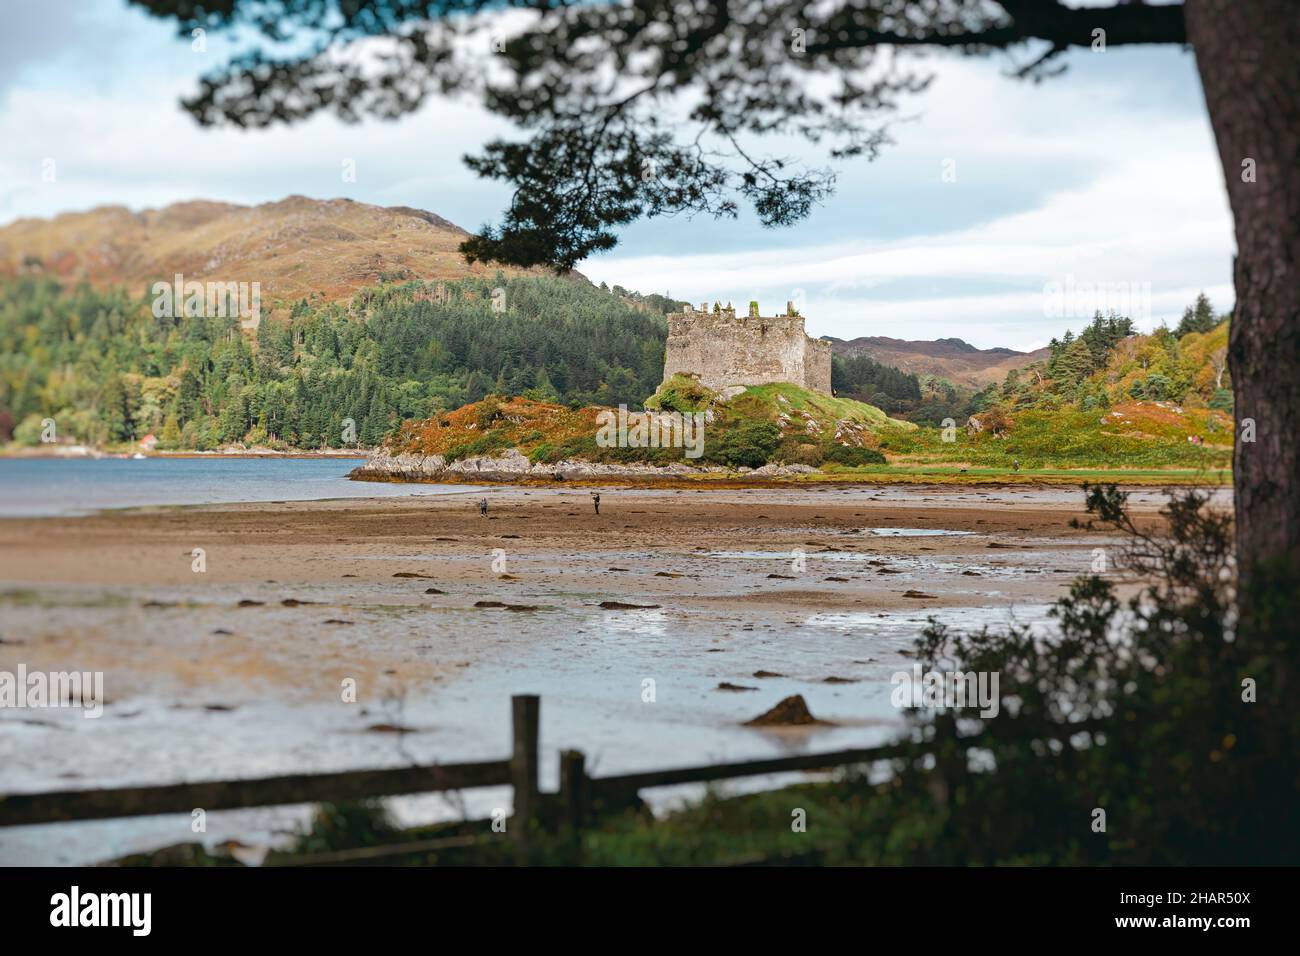 El castillo Tioram del siglo 13th en la isla de marea de Eilean Tioram en el lago Moidart cerca de Acharacle en la península de Arnamurchan, Escocia occidental Foto de stock